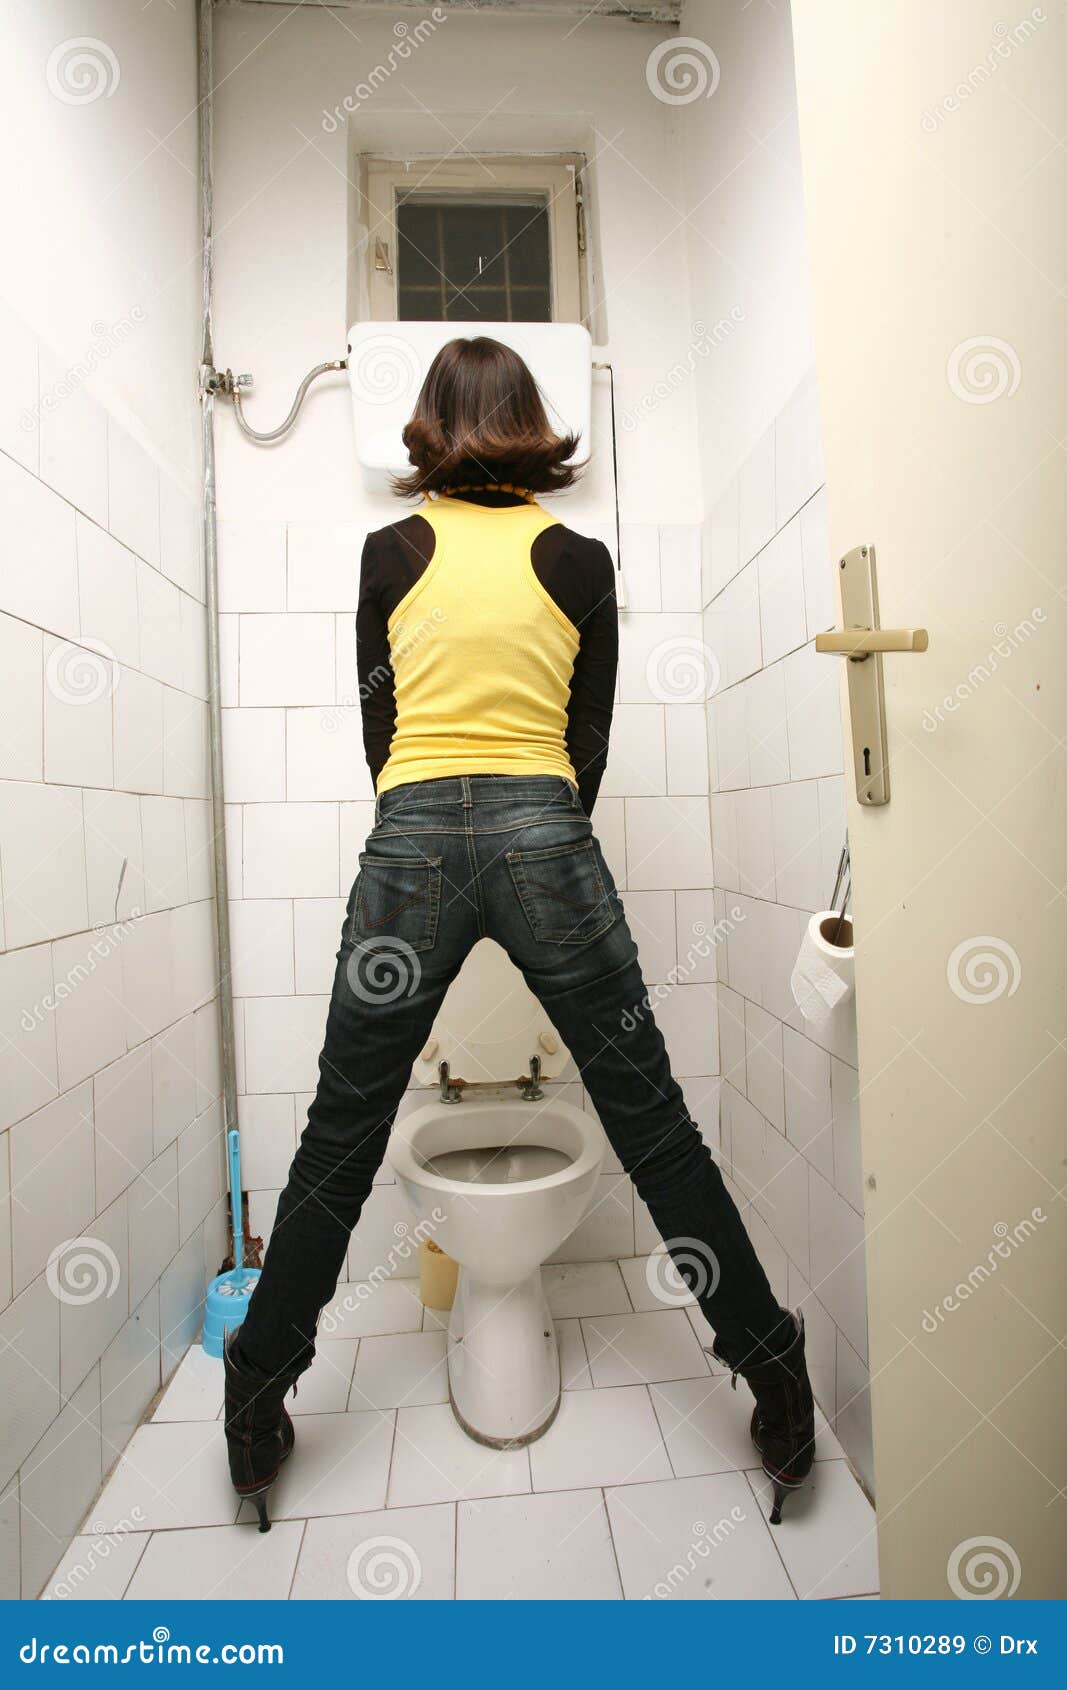 English Women Peeing